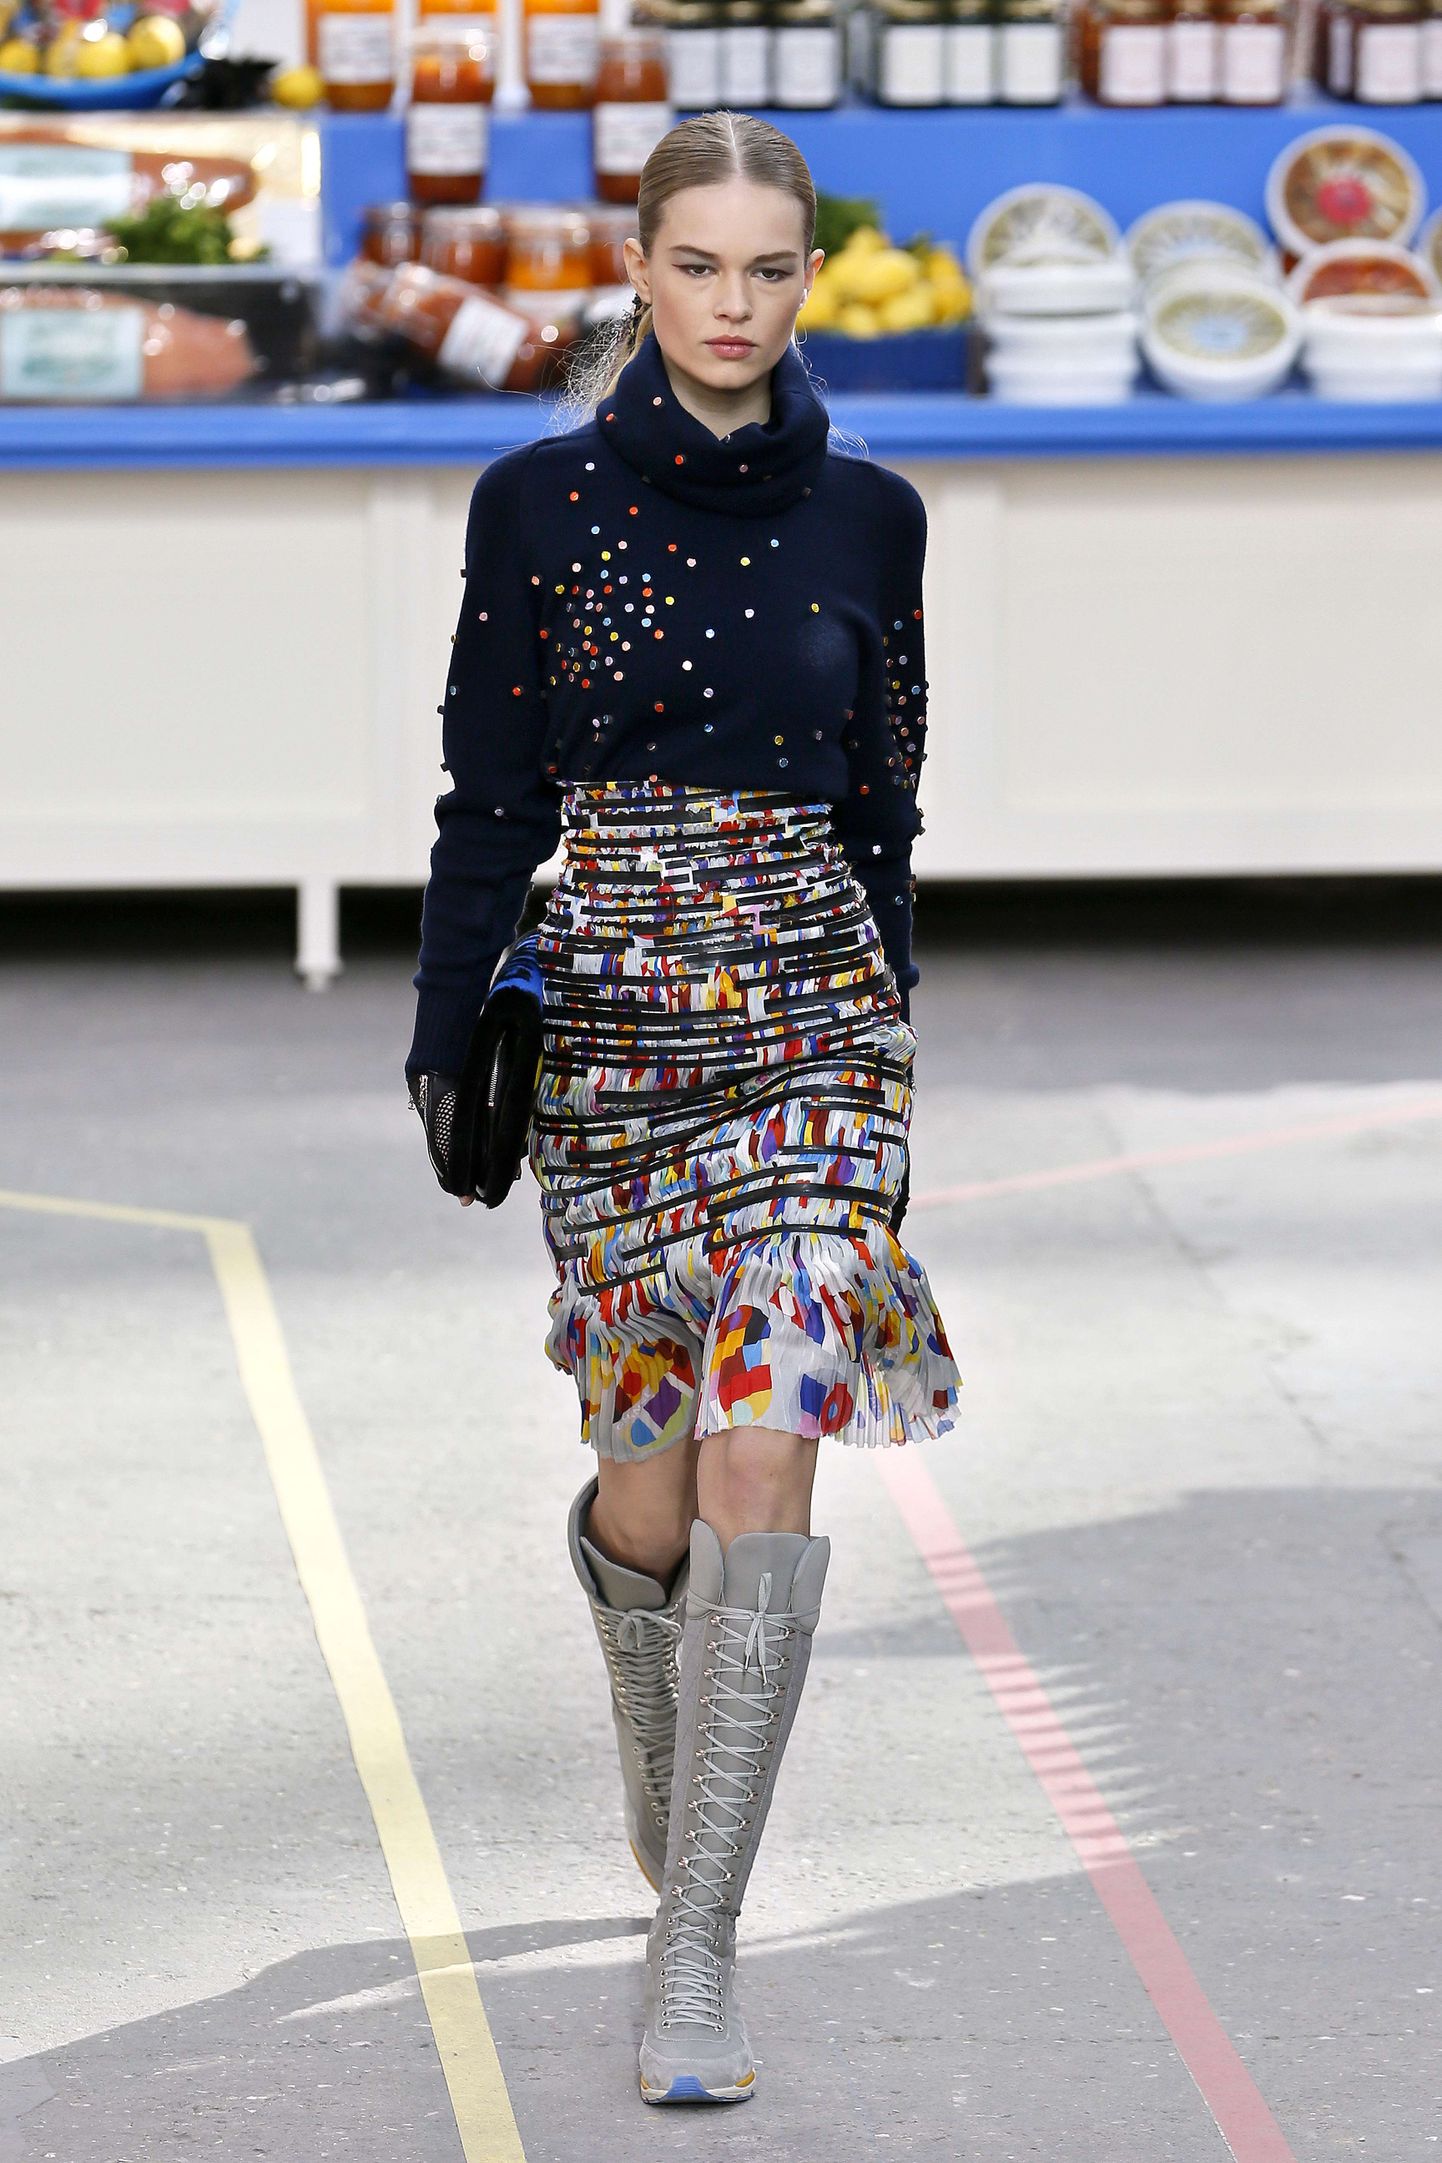 Fotol on modell Chaneli sügistalvise kollektsiooni esitluselt.